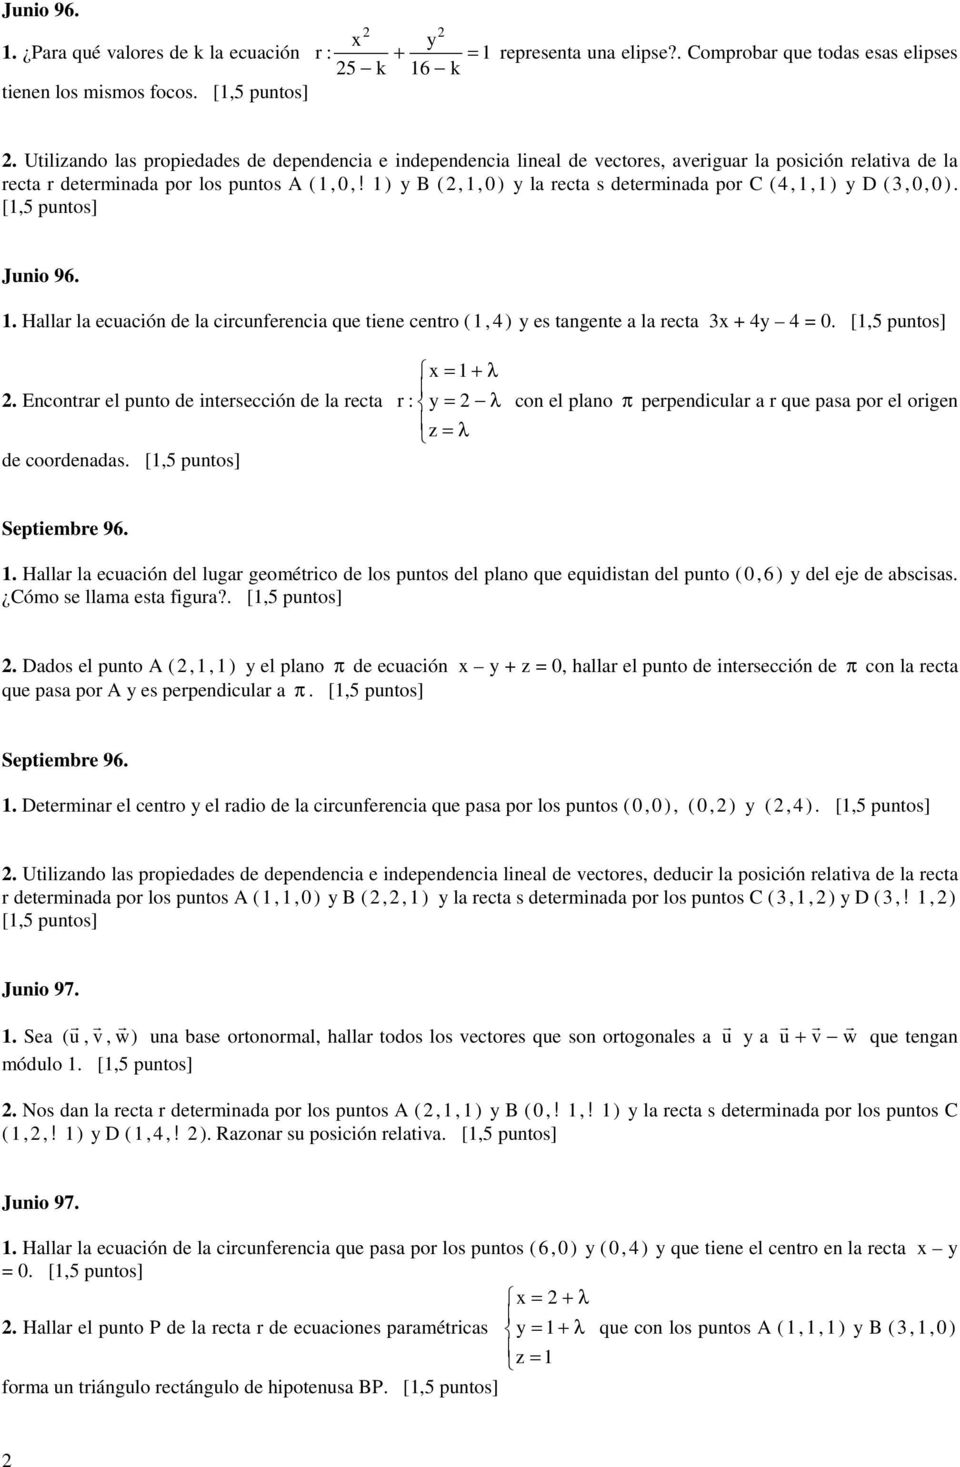 [5 puntos] Junio 96.. Halla la ecuación de la cicunfeencia que tiene cento ( 4) y es tangente a la ecta x + 4y 4 = 0. [5 puntos]. Enconta el punto de intesección de la ecta de coodenadas.